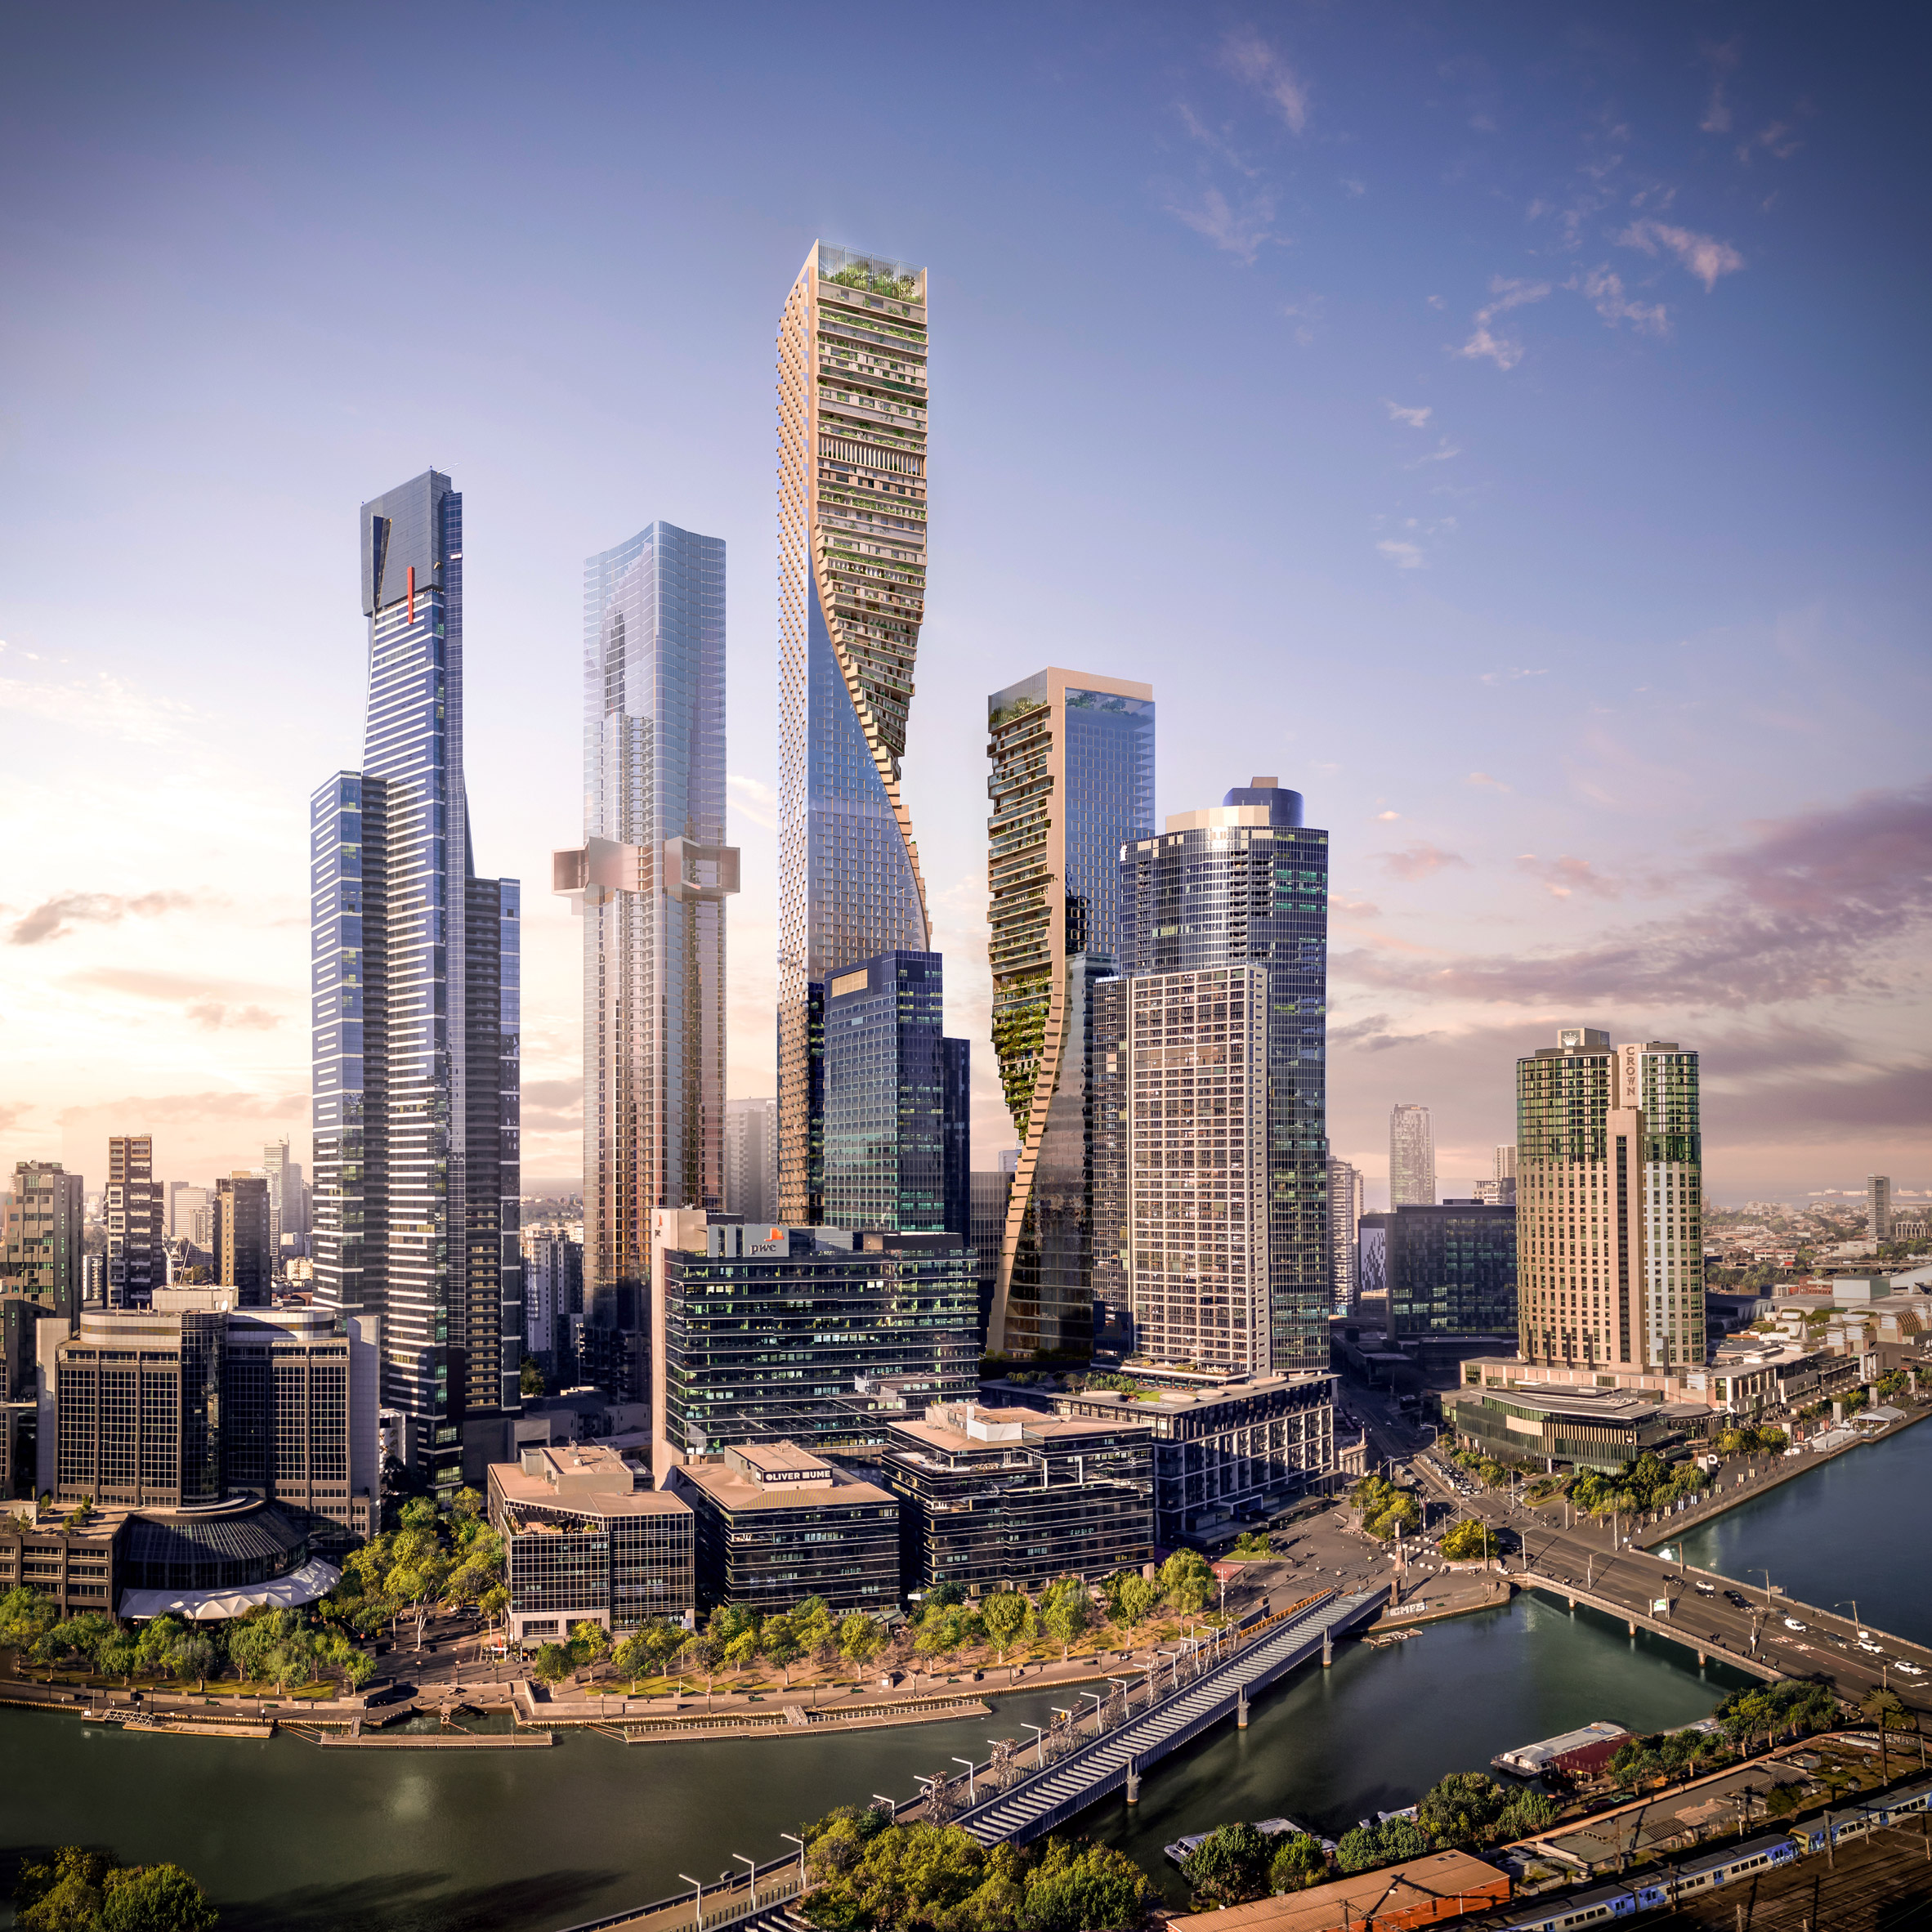 メルボルンのsouthbankプロジェクトはオーストラリア最高の365mの超高層ビル Re Urbanization 再都市化